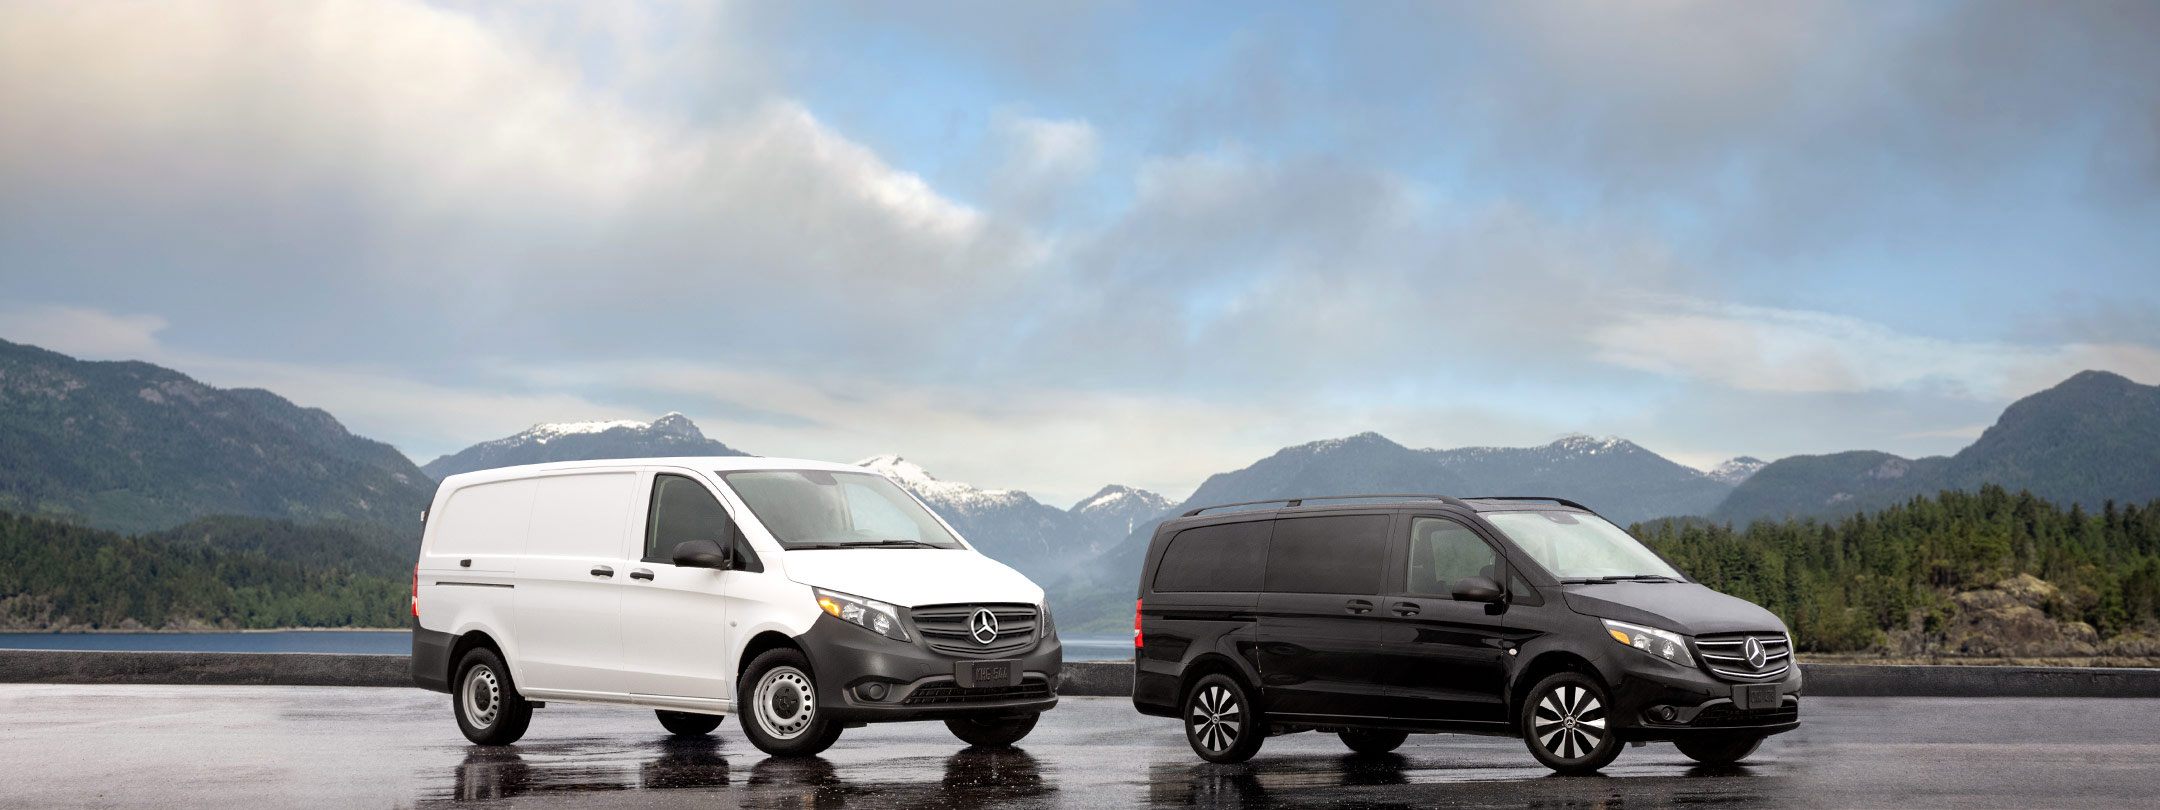 Metris Model Vans | Mercedes-Benz Vans